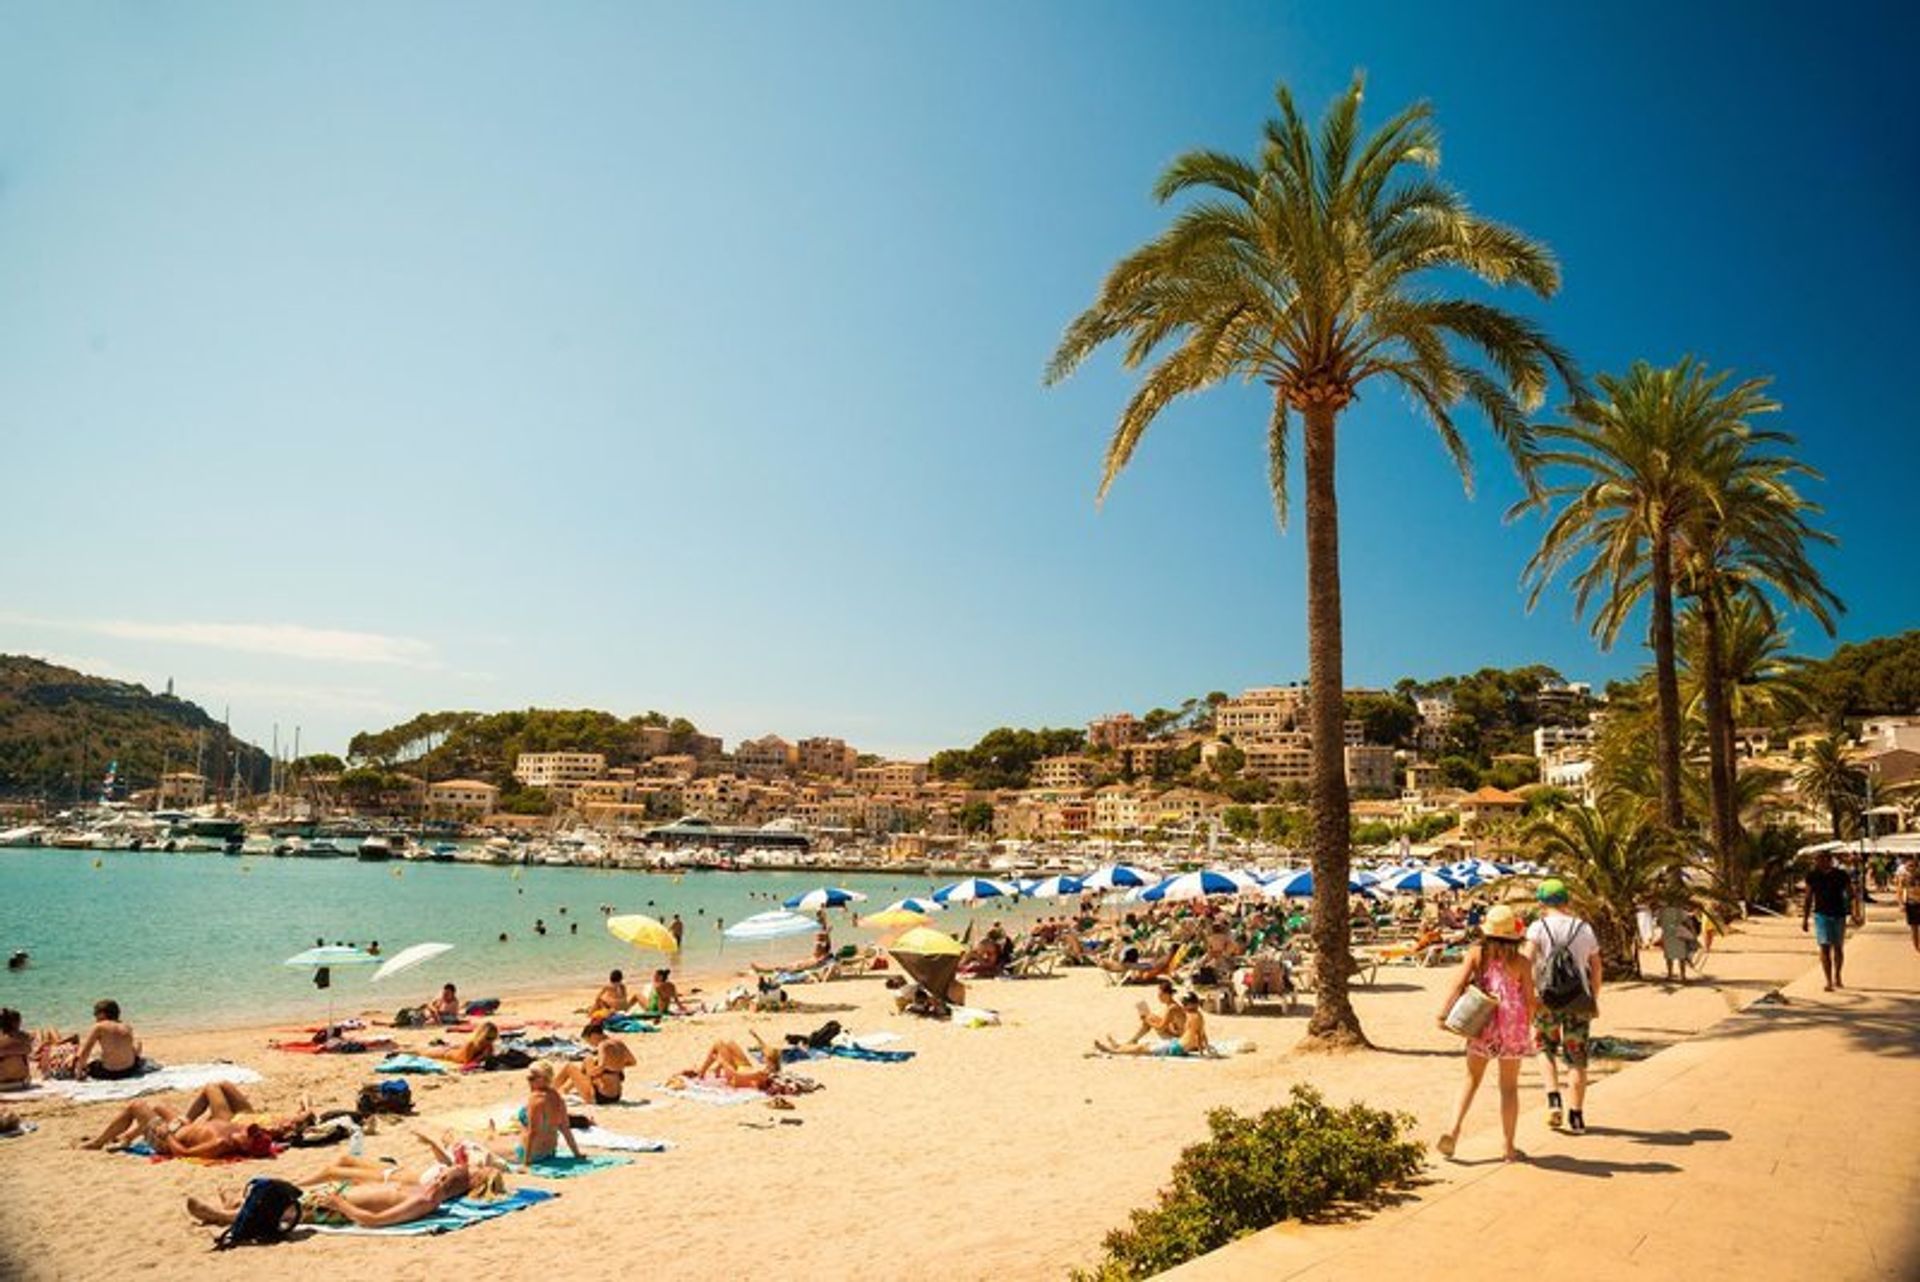 The golden sand beach of Port de Soller, northwest coast of Majorca